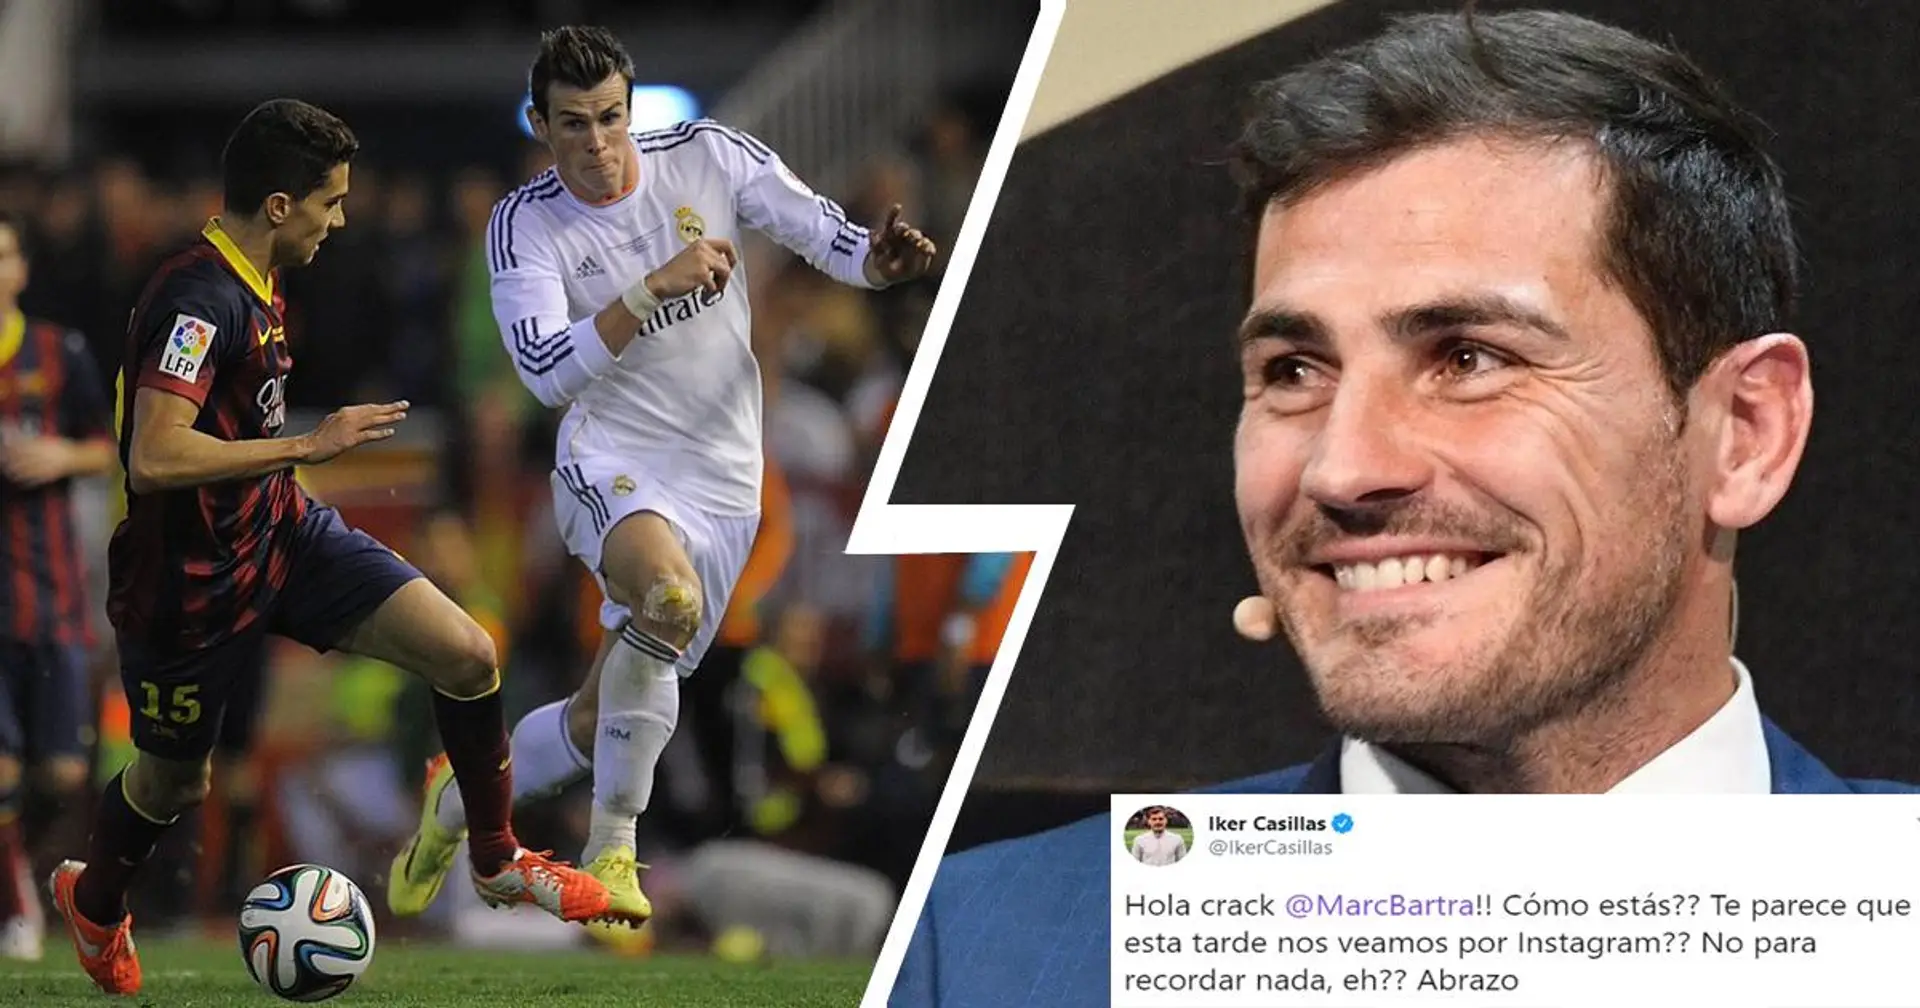 "Nous avons quelque chose à retenir, non?": Casillas trolle Marc Bartra en lui proposant de se rencontrer sur Instagram pour l'anniversaire du but de Bale